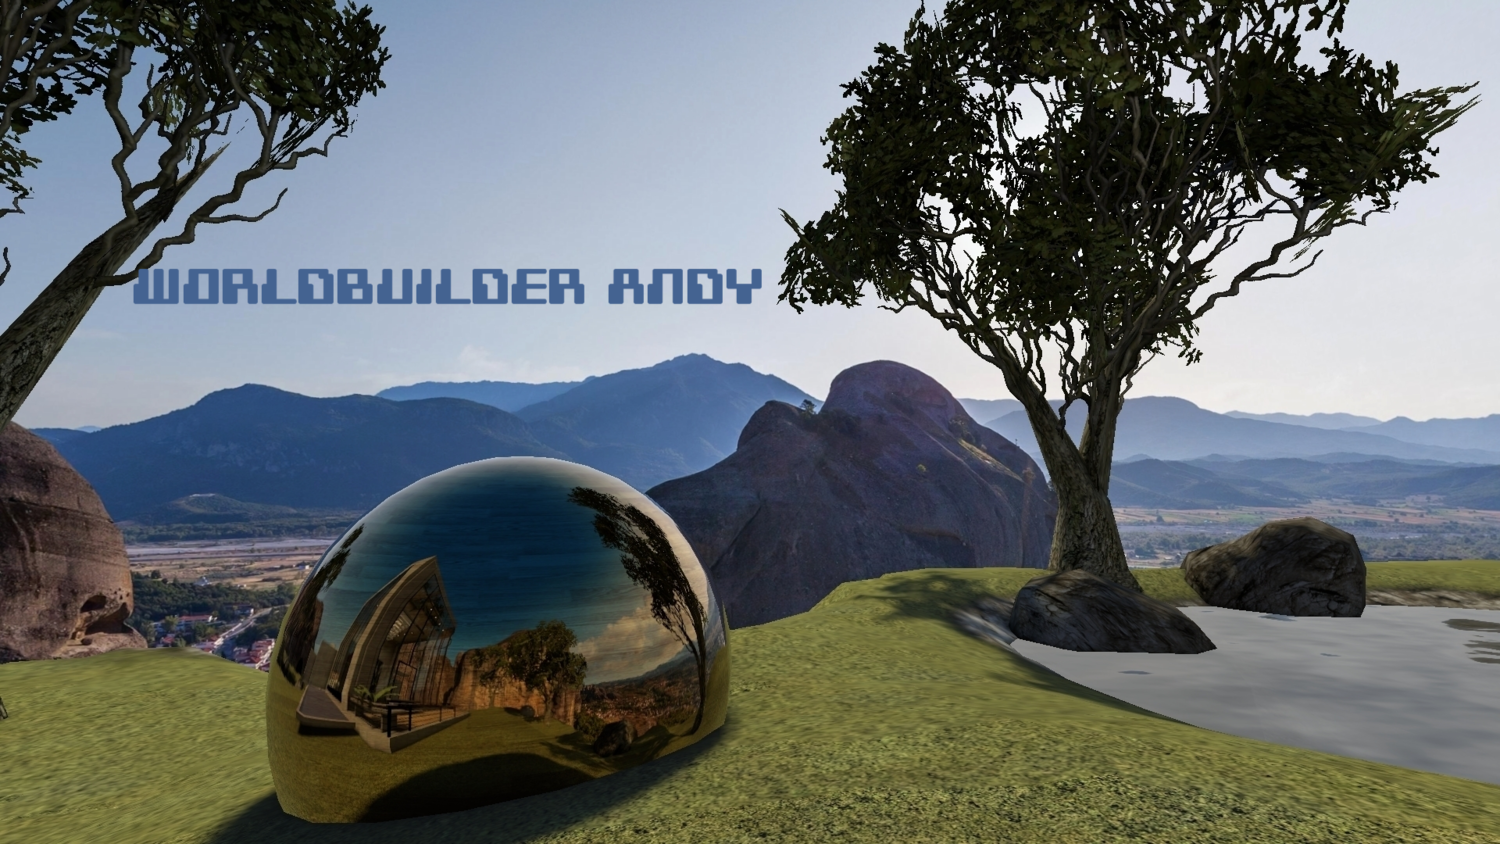 Episode 90 - Worldbuilder Andy